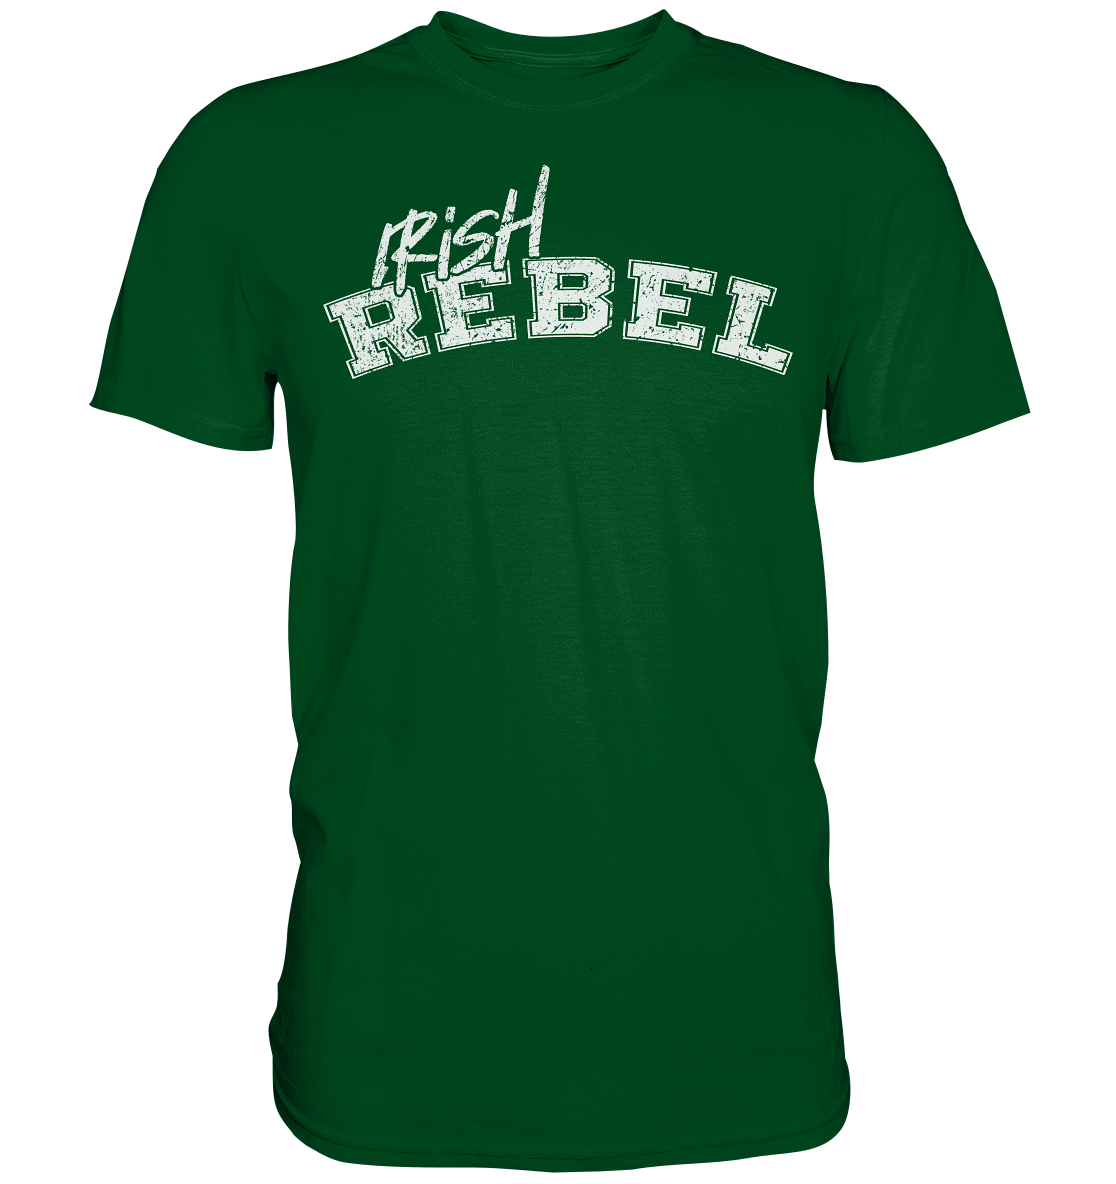 "Irish Rebel" - Premium Shirt